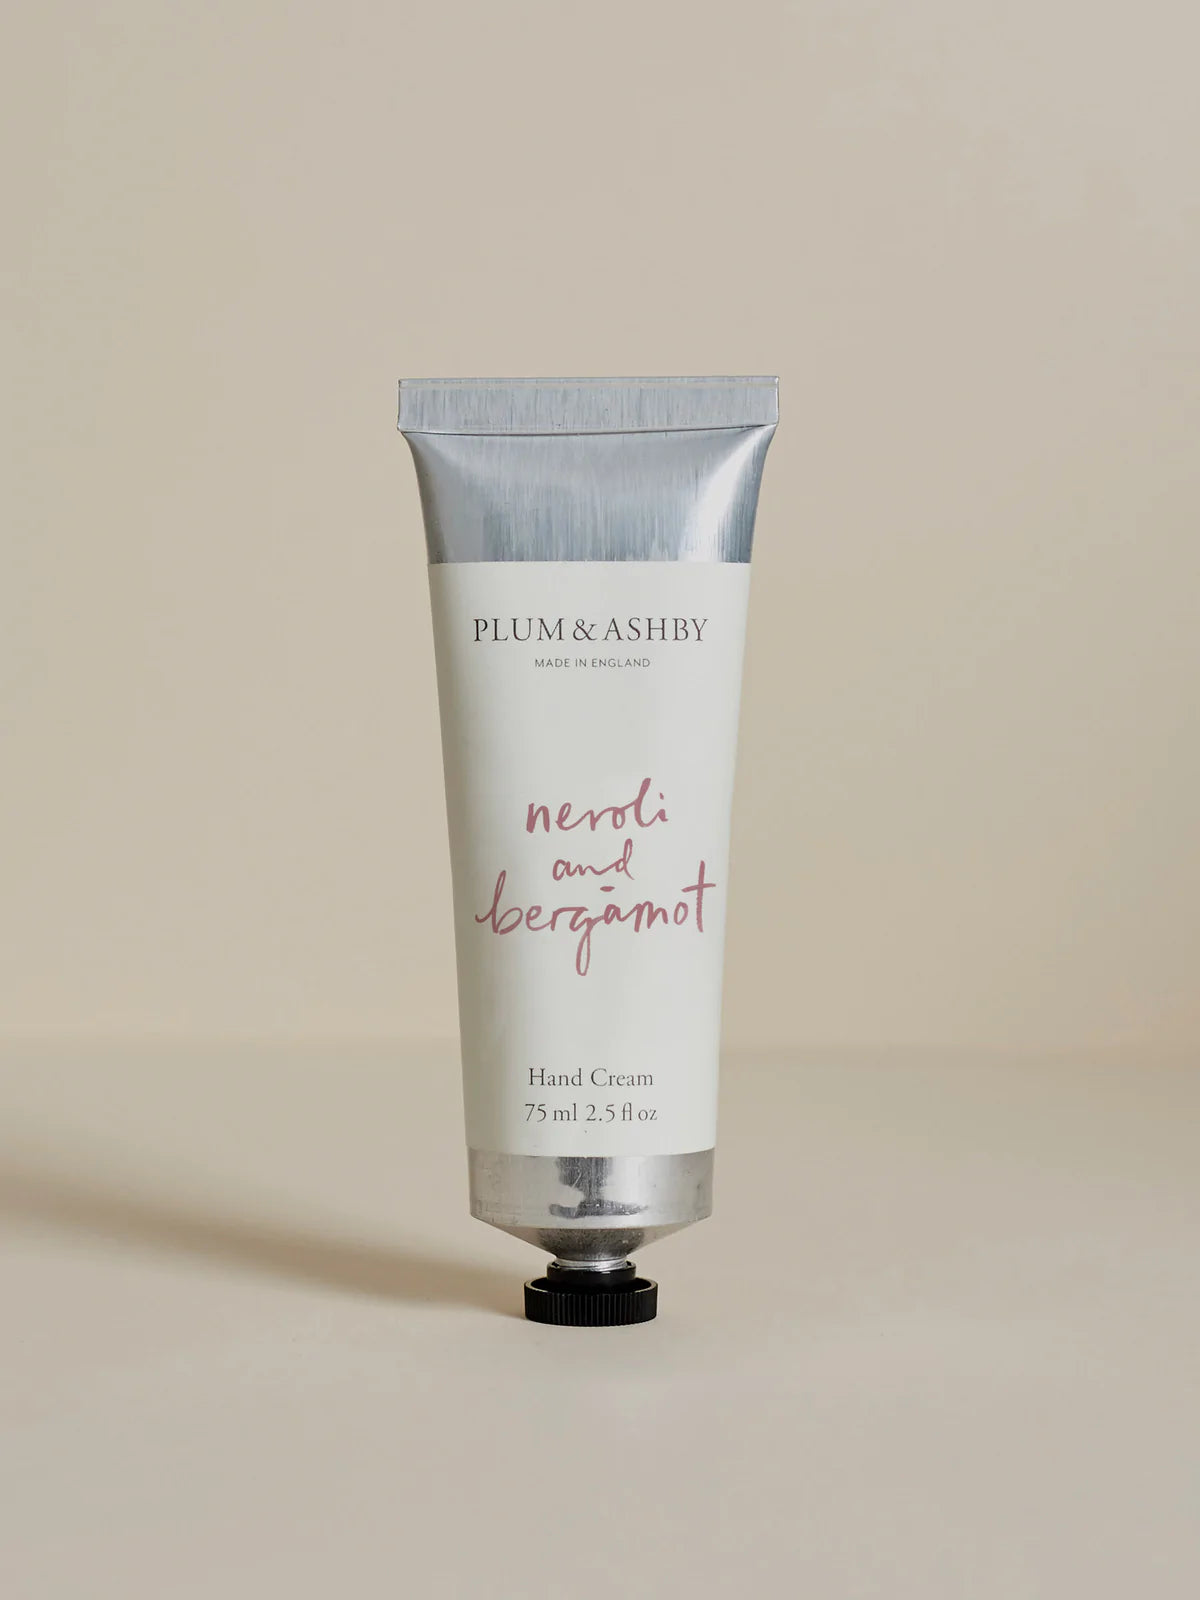 Plum & Ashby Hand Cream : Neroli and Begamont